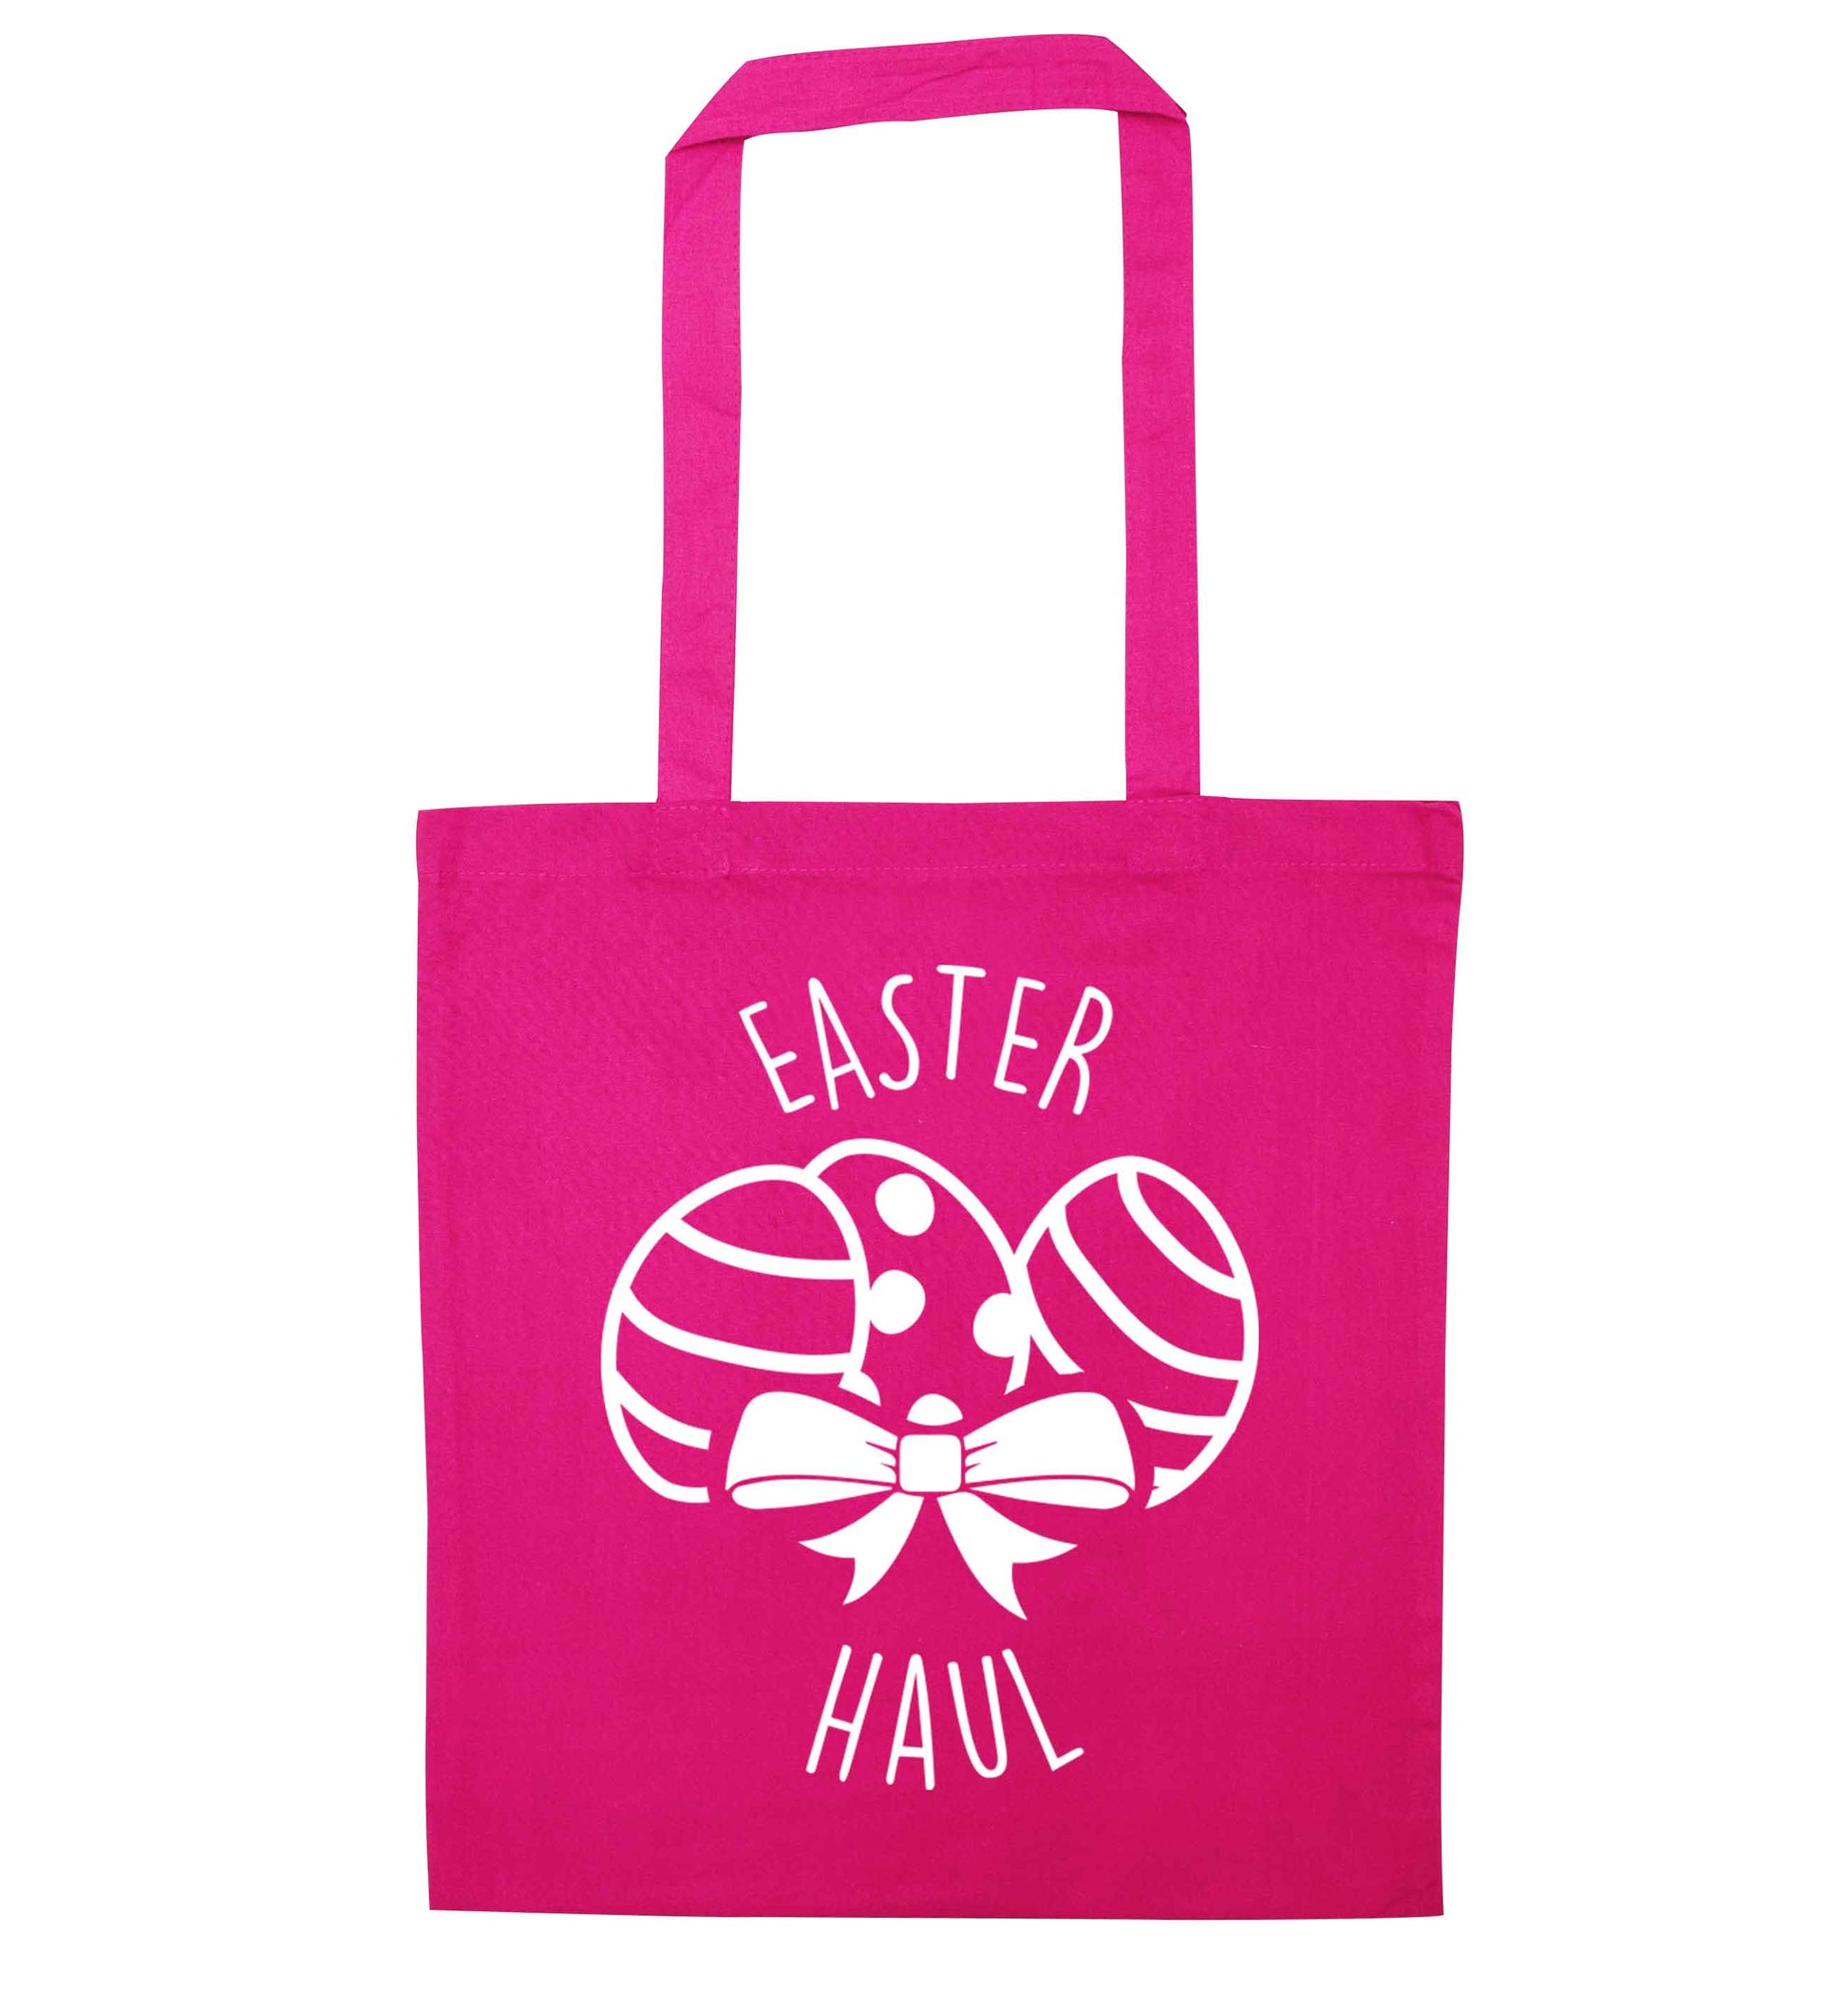 Easter haul pink tote bag